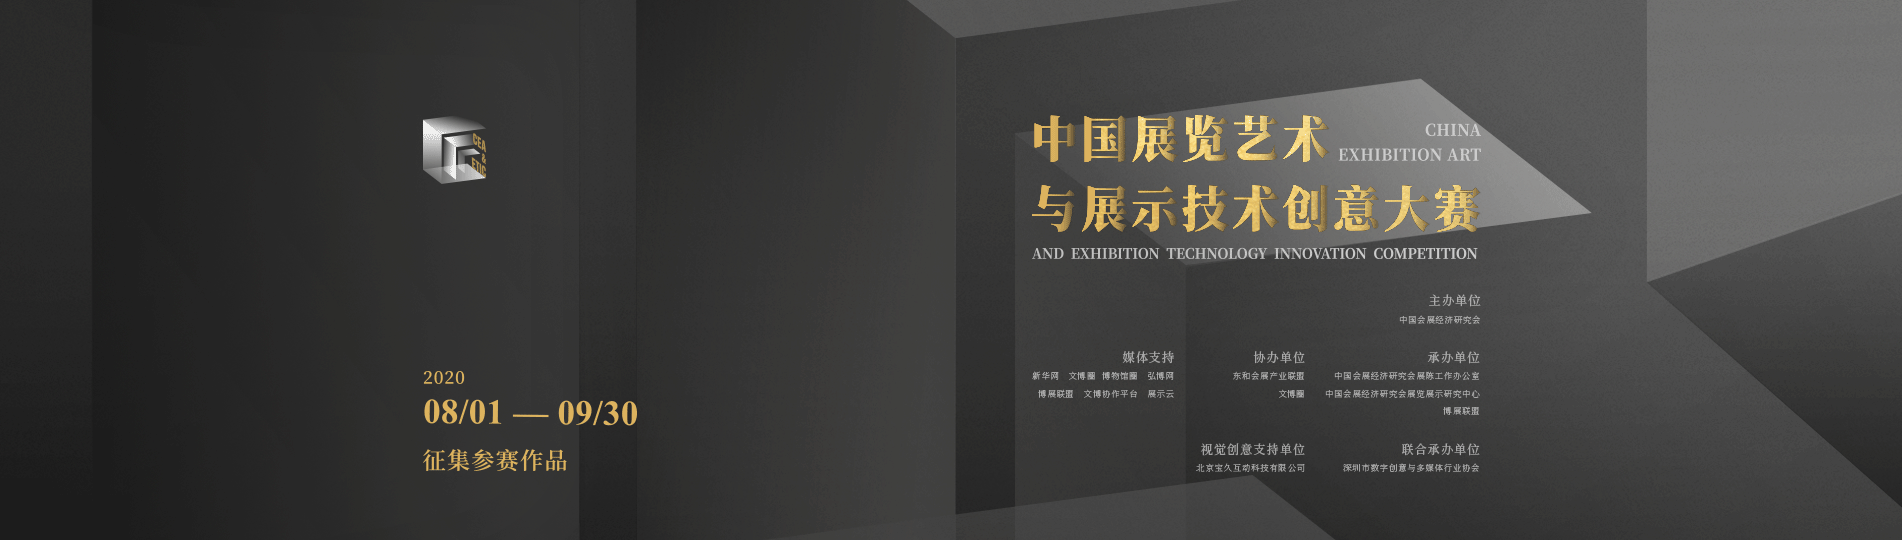 2020首屆中國展覽藝術與展示技術創意大賽